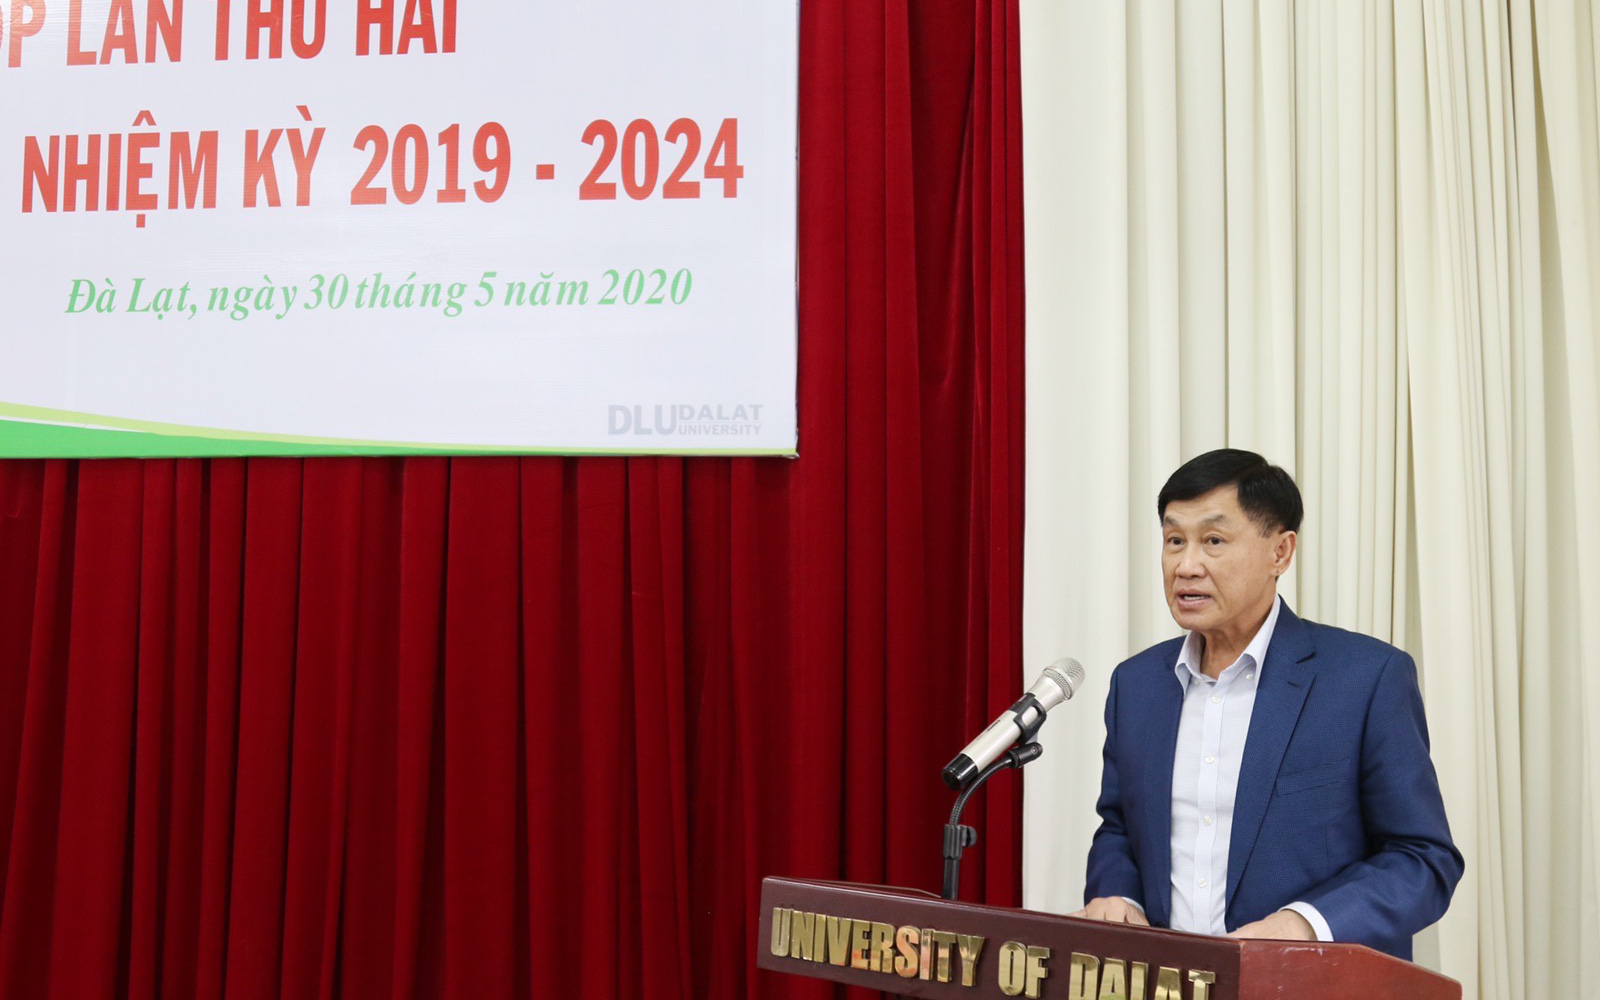 Doanh nhân Johnathan Hạnh Nguyễn tiếp tục là Thành viên Hội đồng Trường Đại học Đà Lạt nhiệm kỳ 2019 - 2024